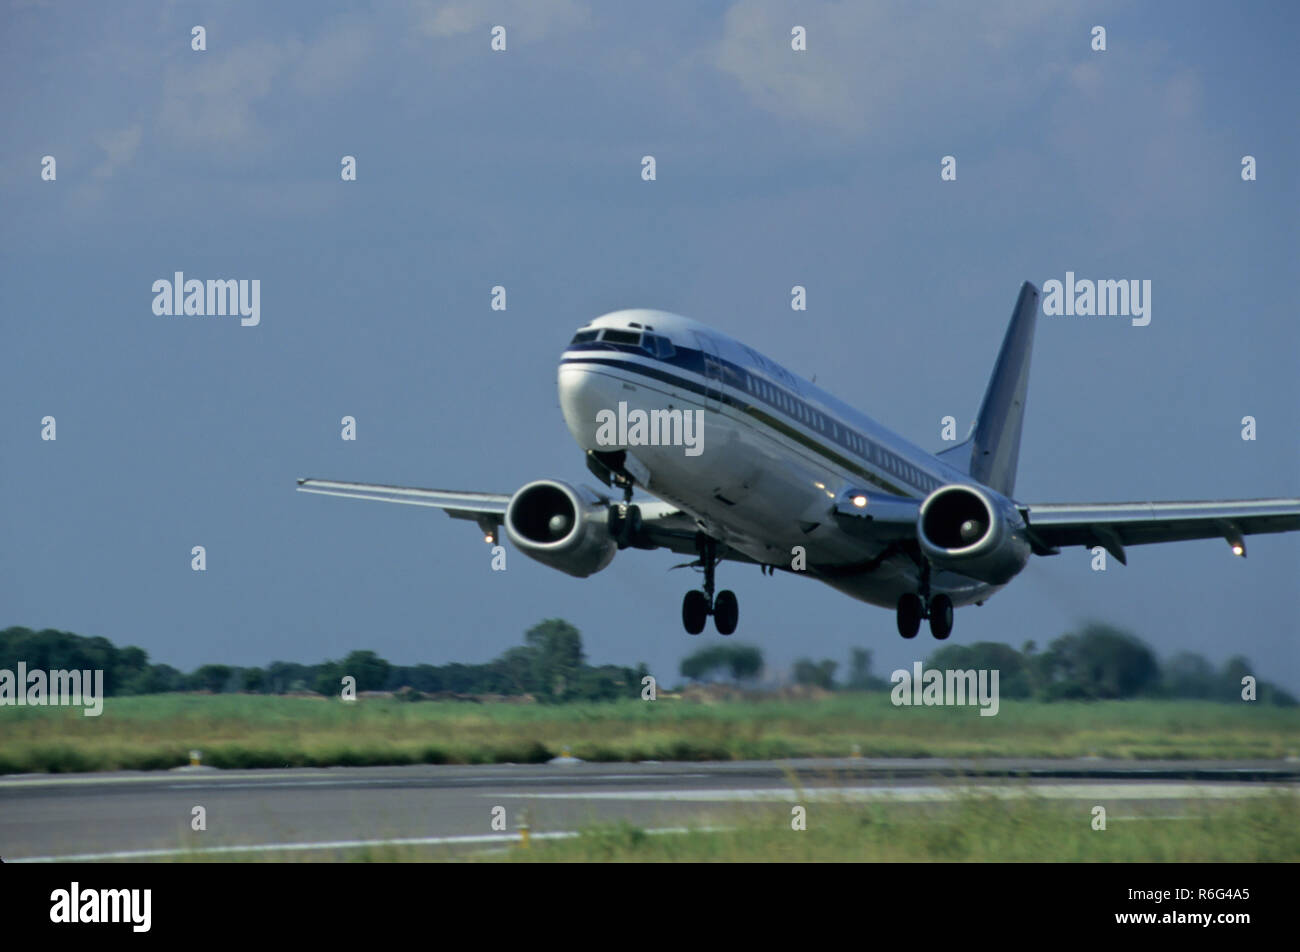 Aeroplane takeoff, Bombay, Mumbai, Maharashtra, India, Asia Stock Photo